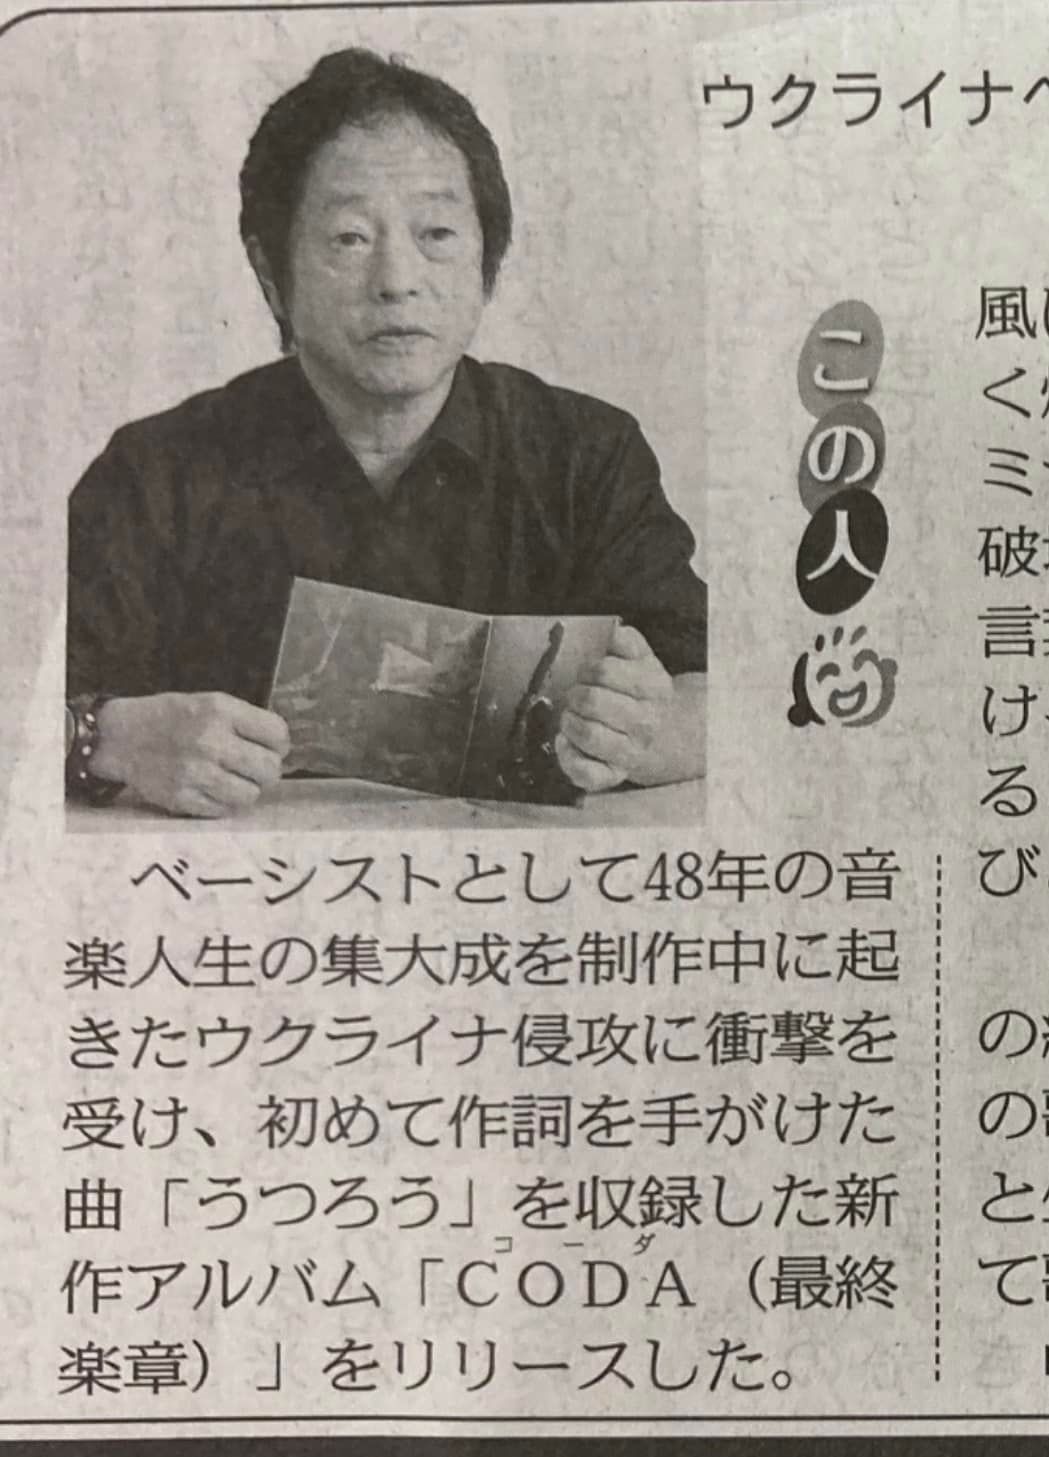 8/31 東京新聞朝刊に掲載されました。